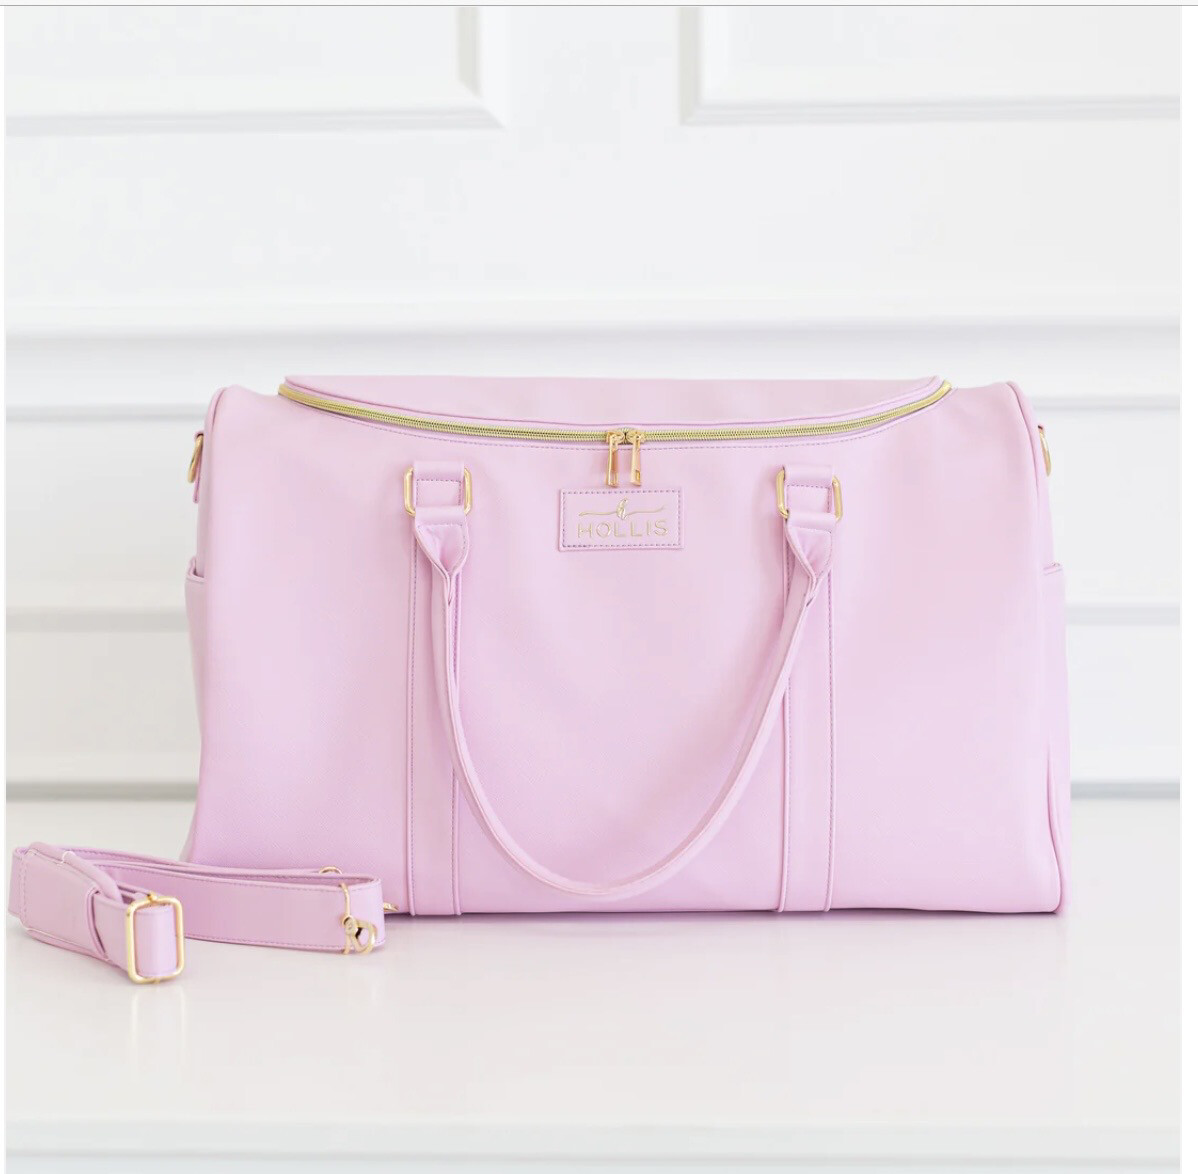 Hollis 04448 Pixie Pink Weekender Bag 